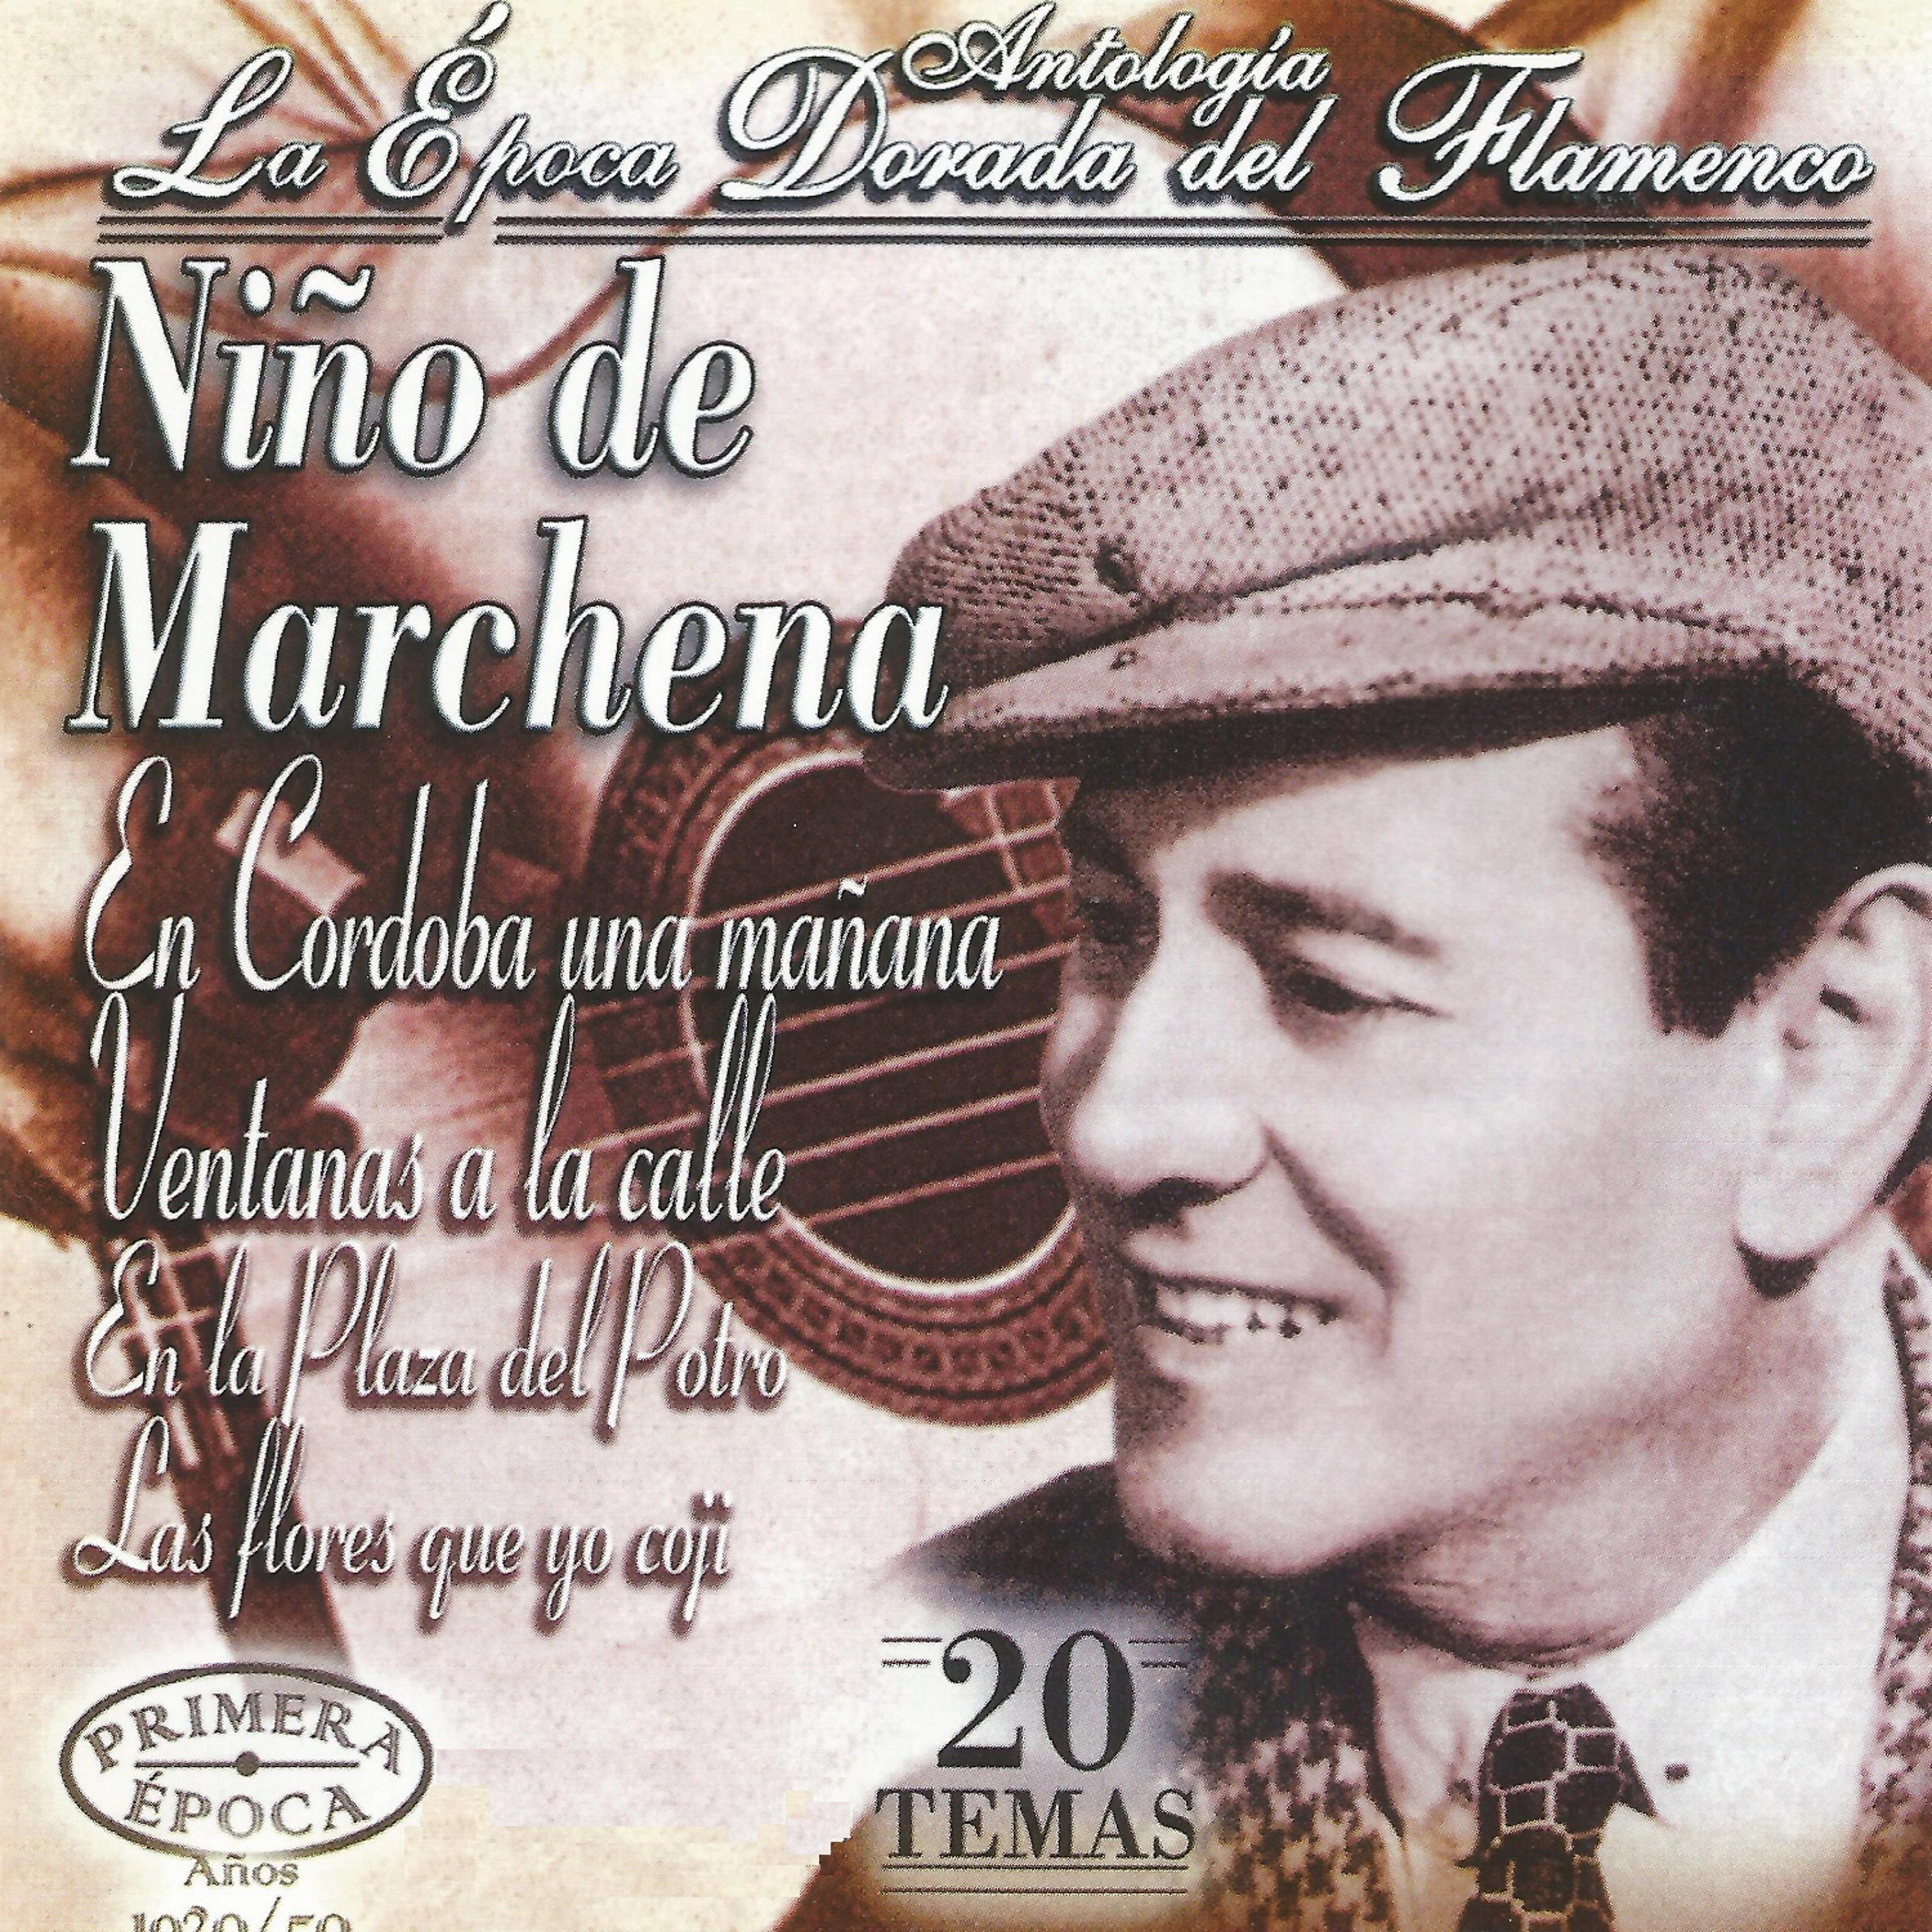 Постер альбома Niño de Marchena, La Época Dorada del Flamenco